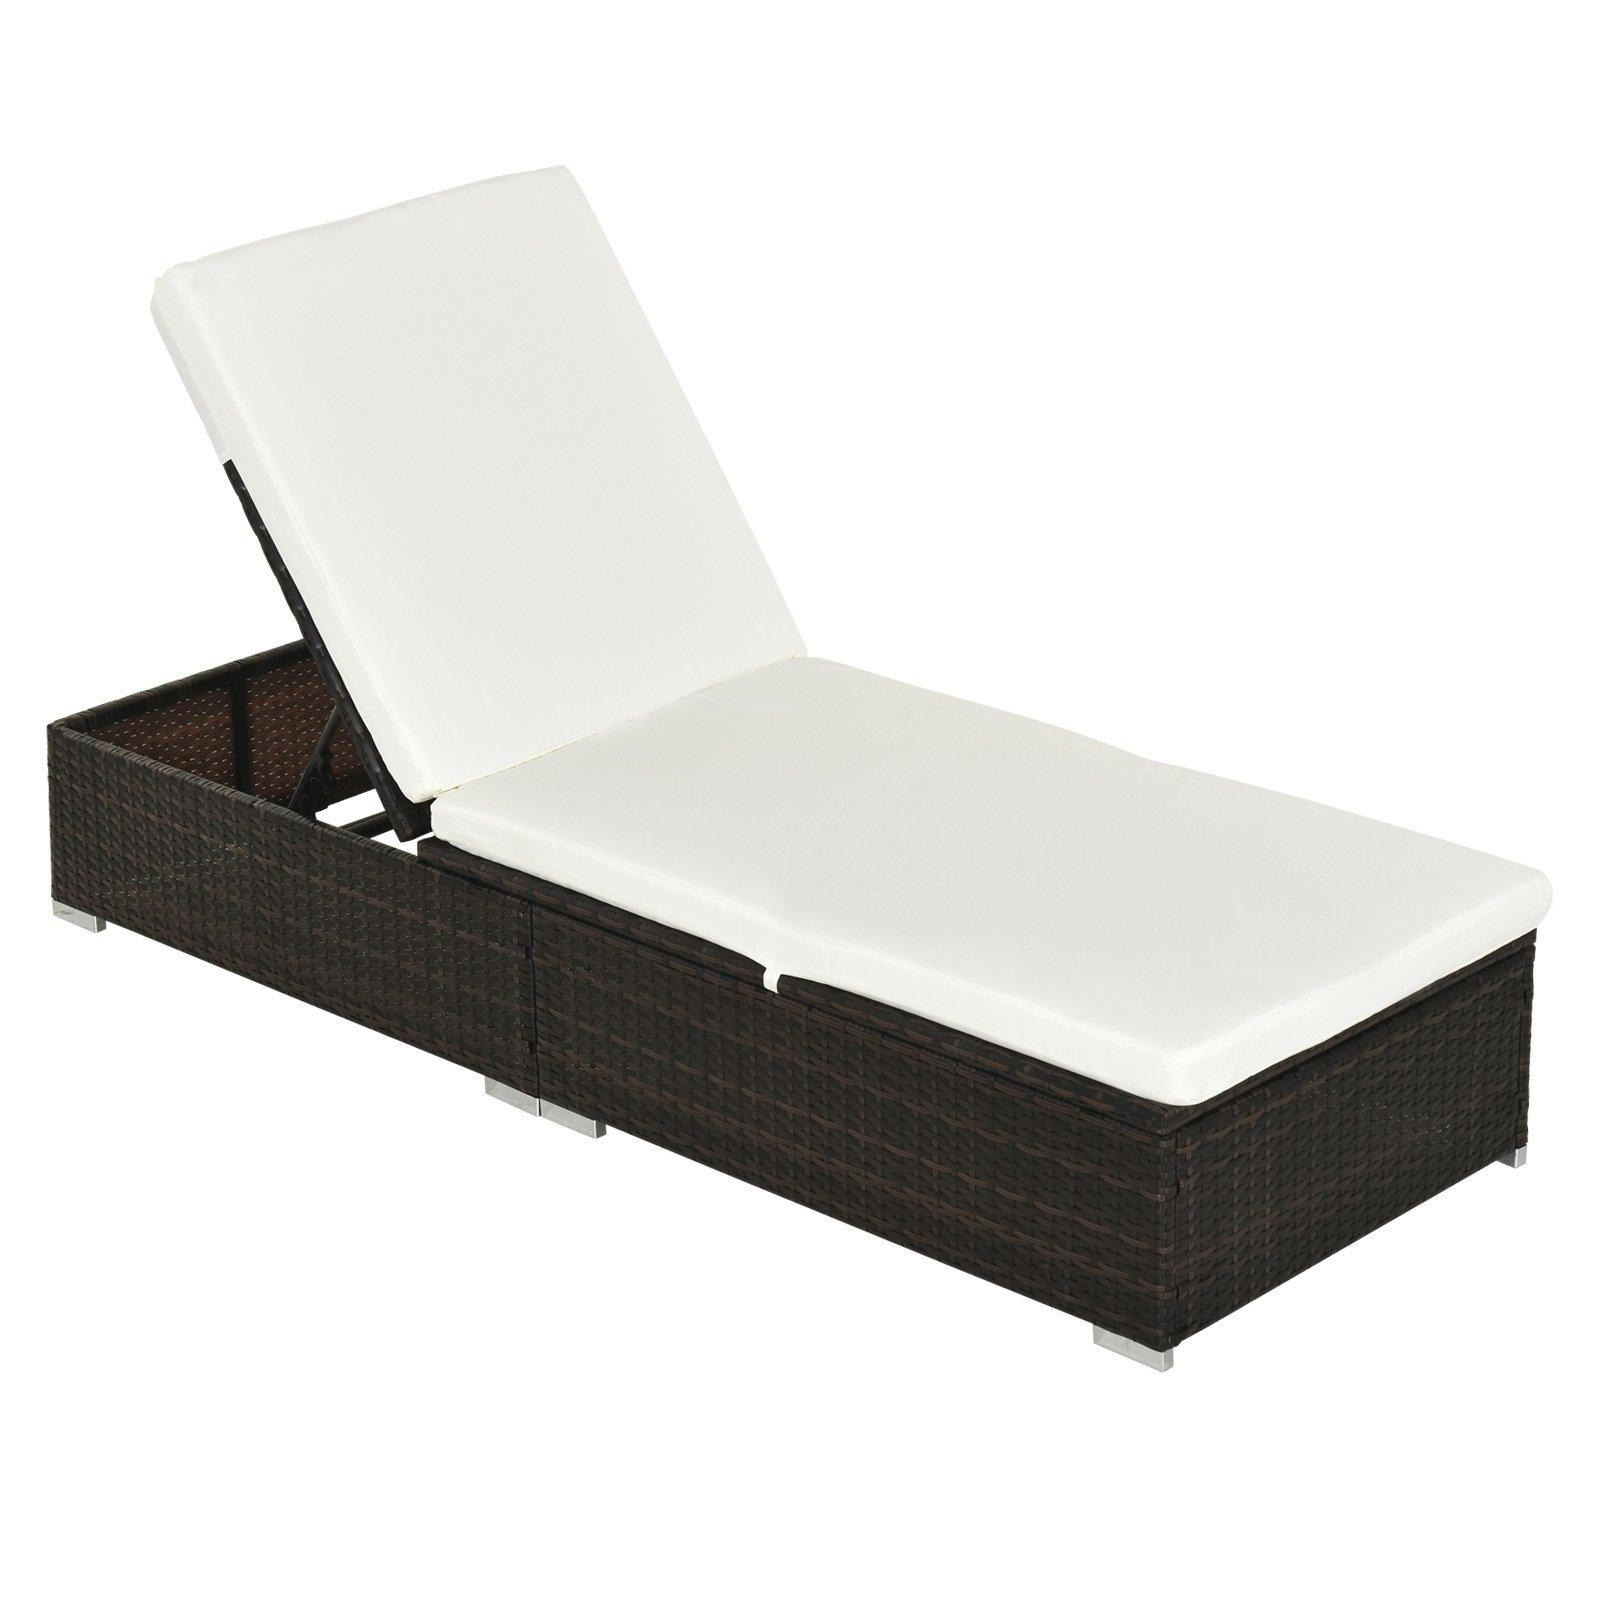 Garden Rattan Recliner Lounger Furniture Sun Lounger Recliner Bed Chair